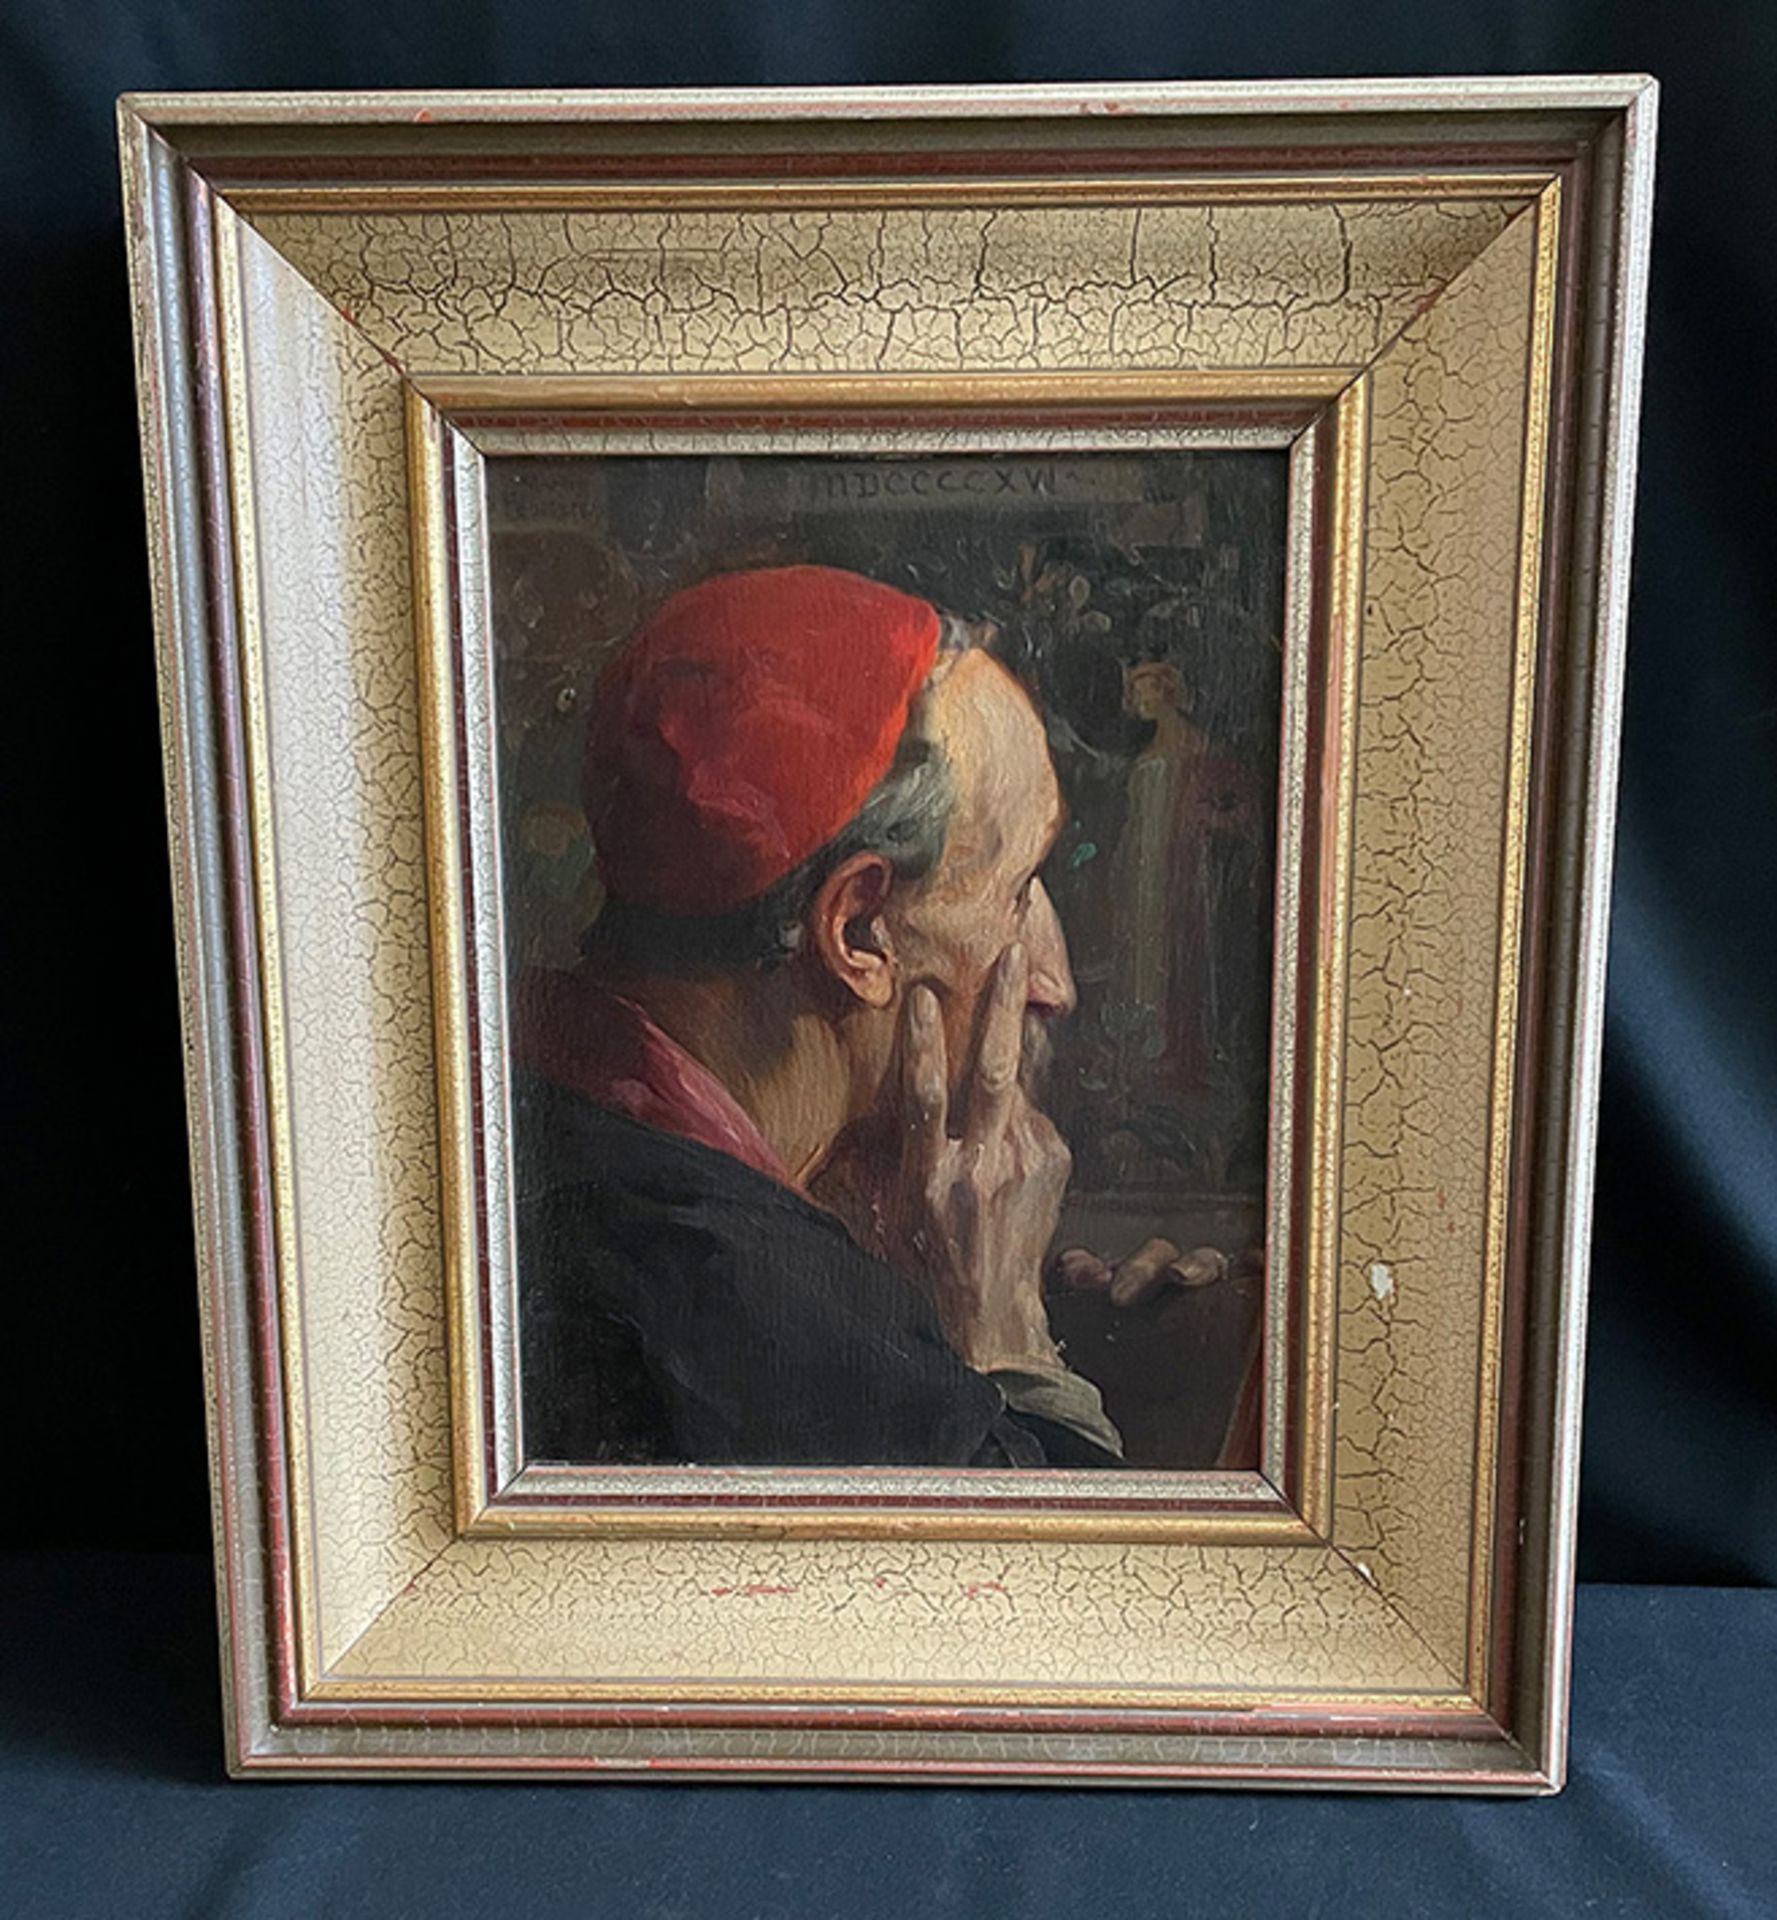 Martin FEUERSTEIN (1856-1931), Portrait eines Kardinals, signiert und datiert 1916 (MDCCCCXVI), - Bild 3 aus 6